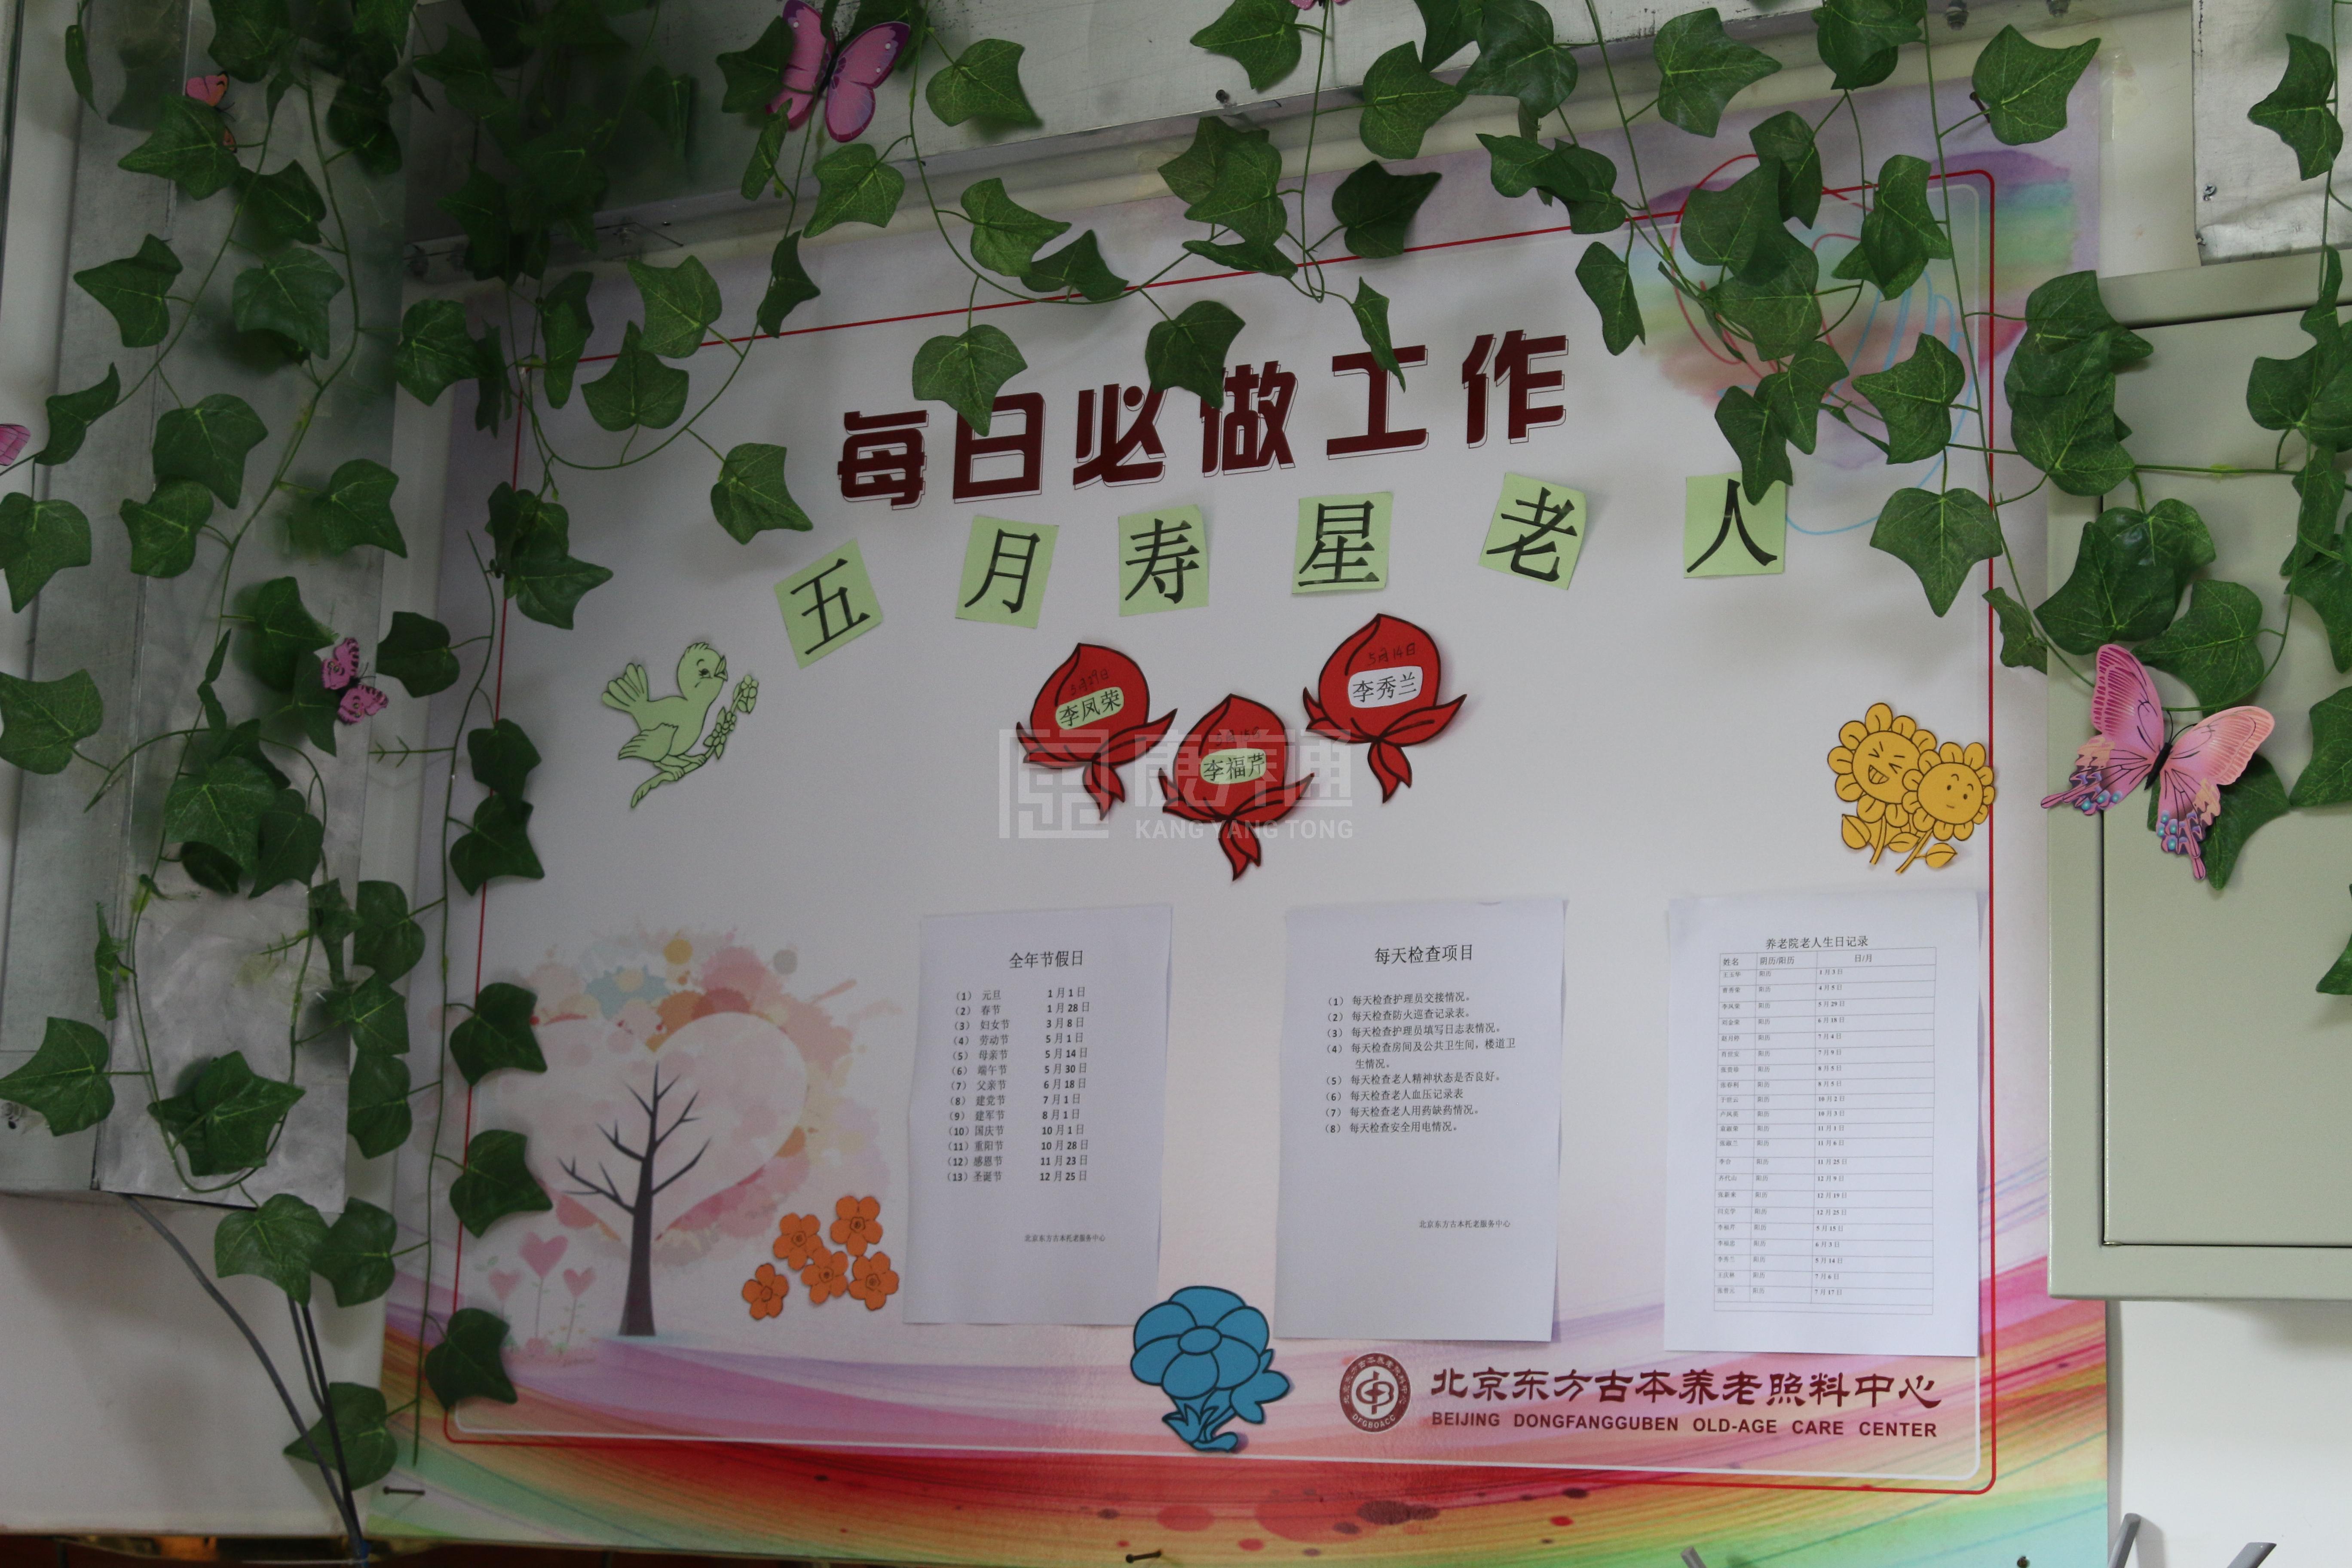 北京怀柔东方古本养老照料中心服务项目图3惬意的环境、感受岁月静好